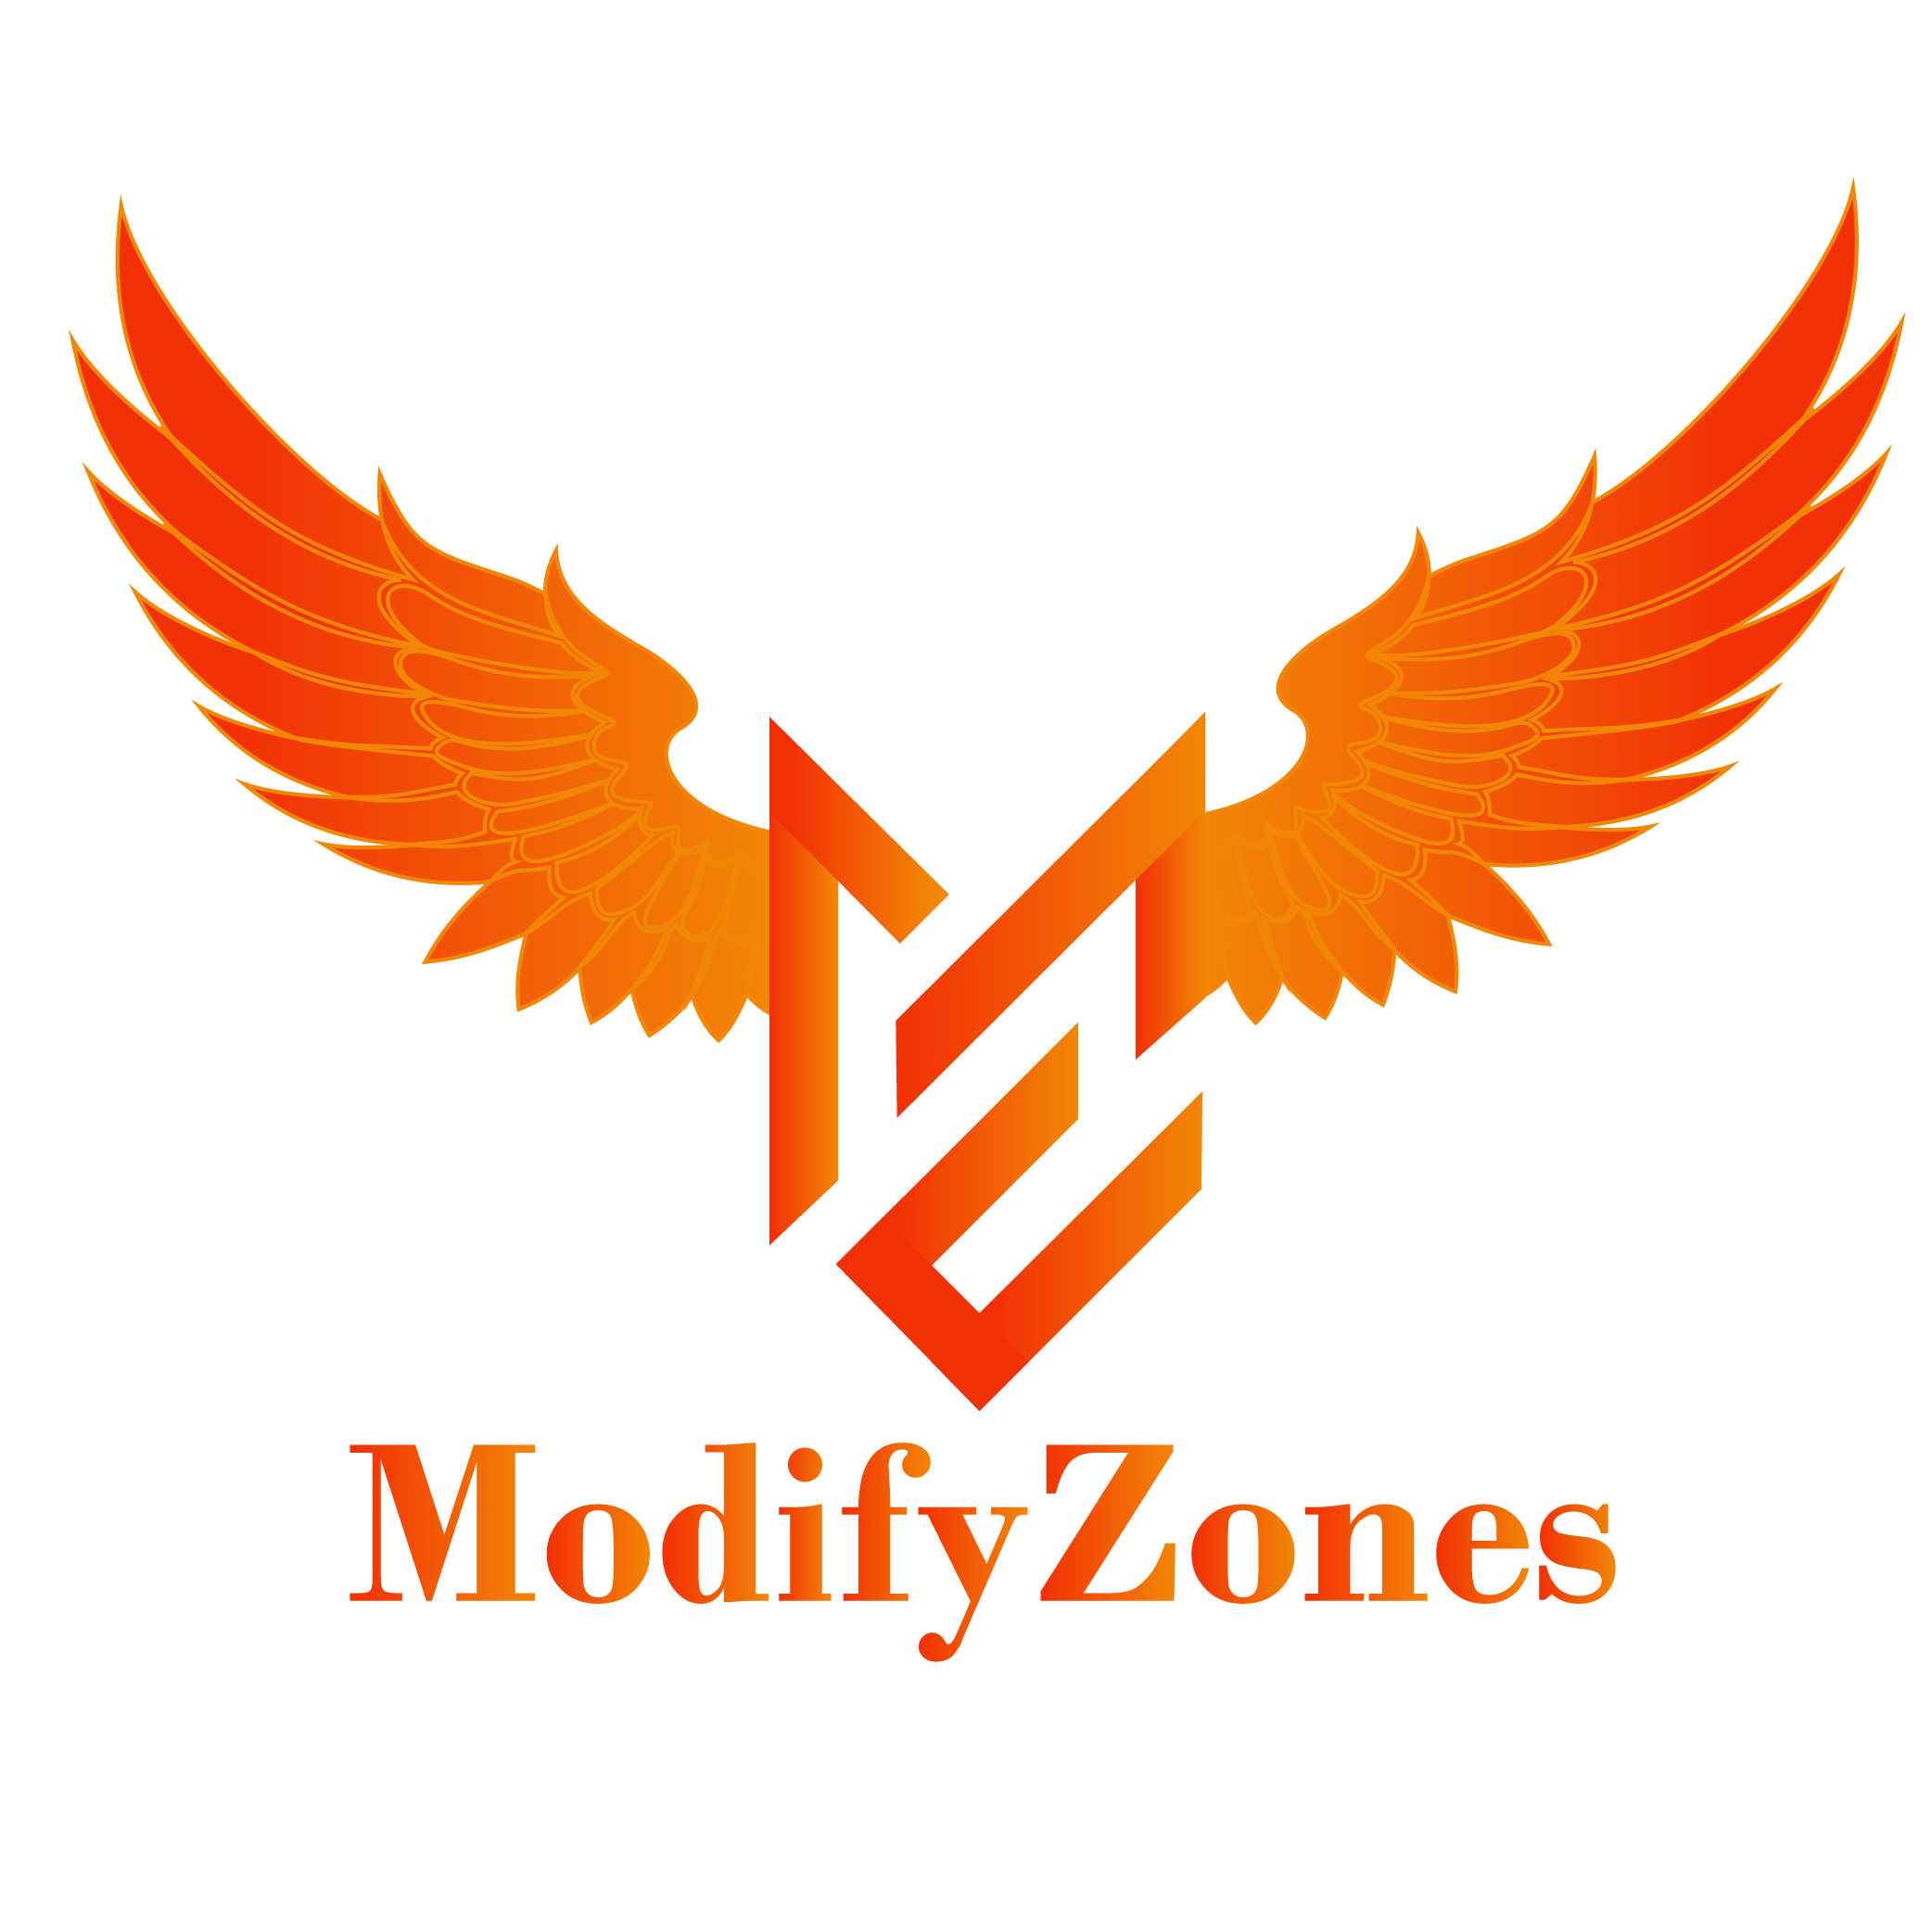 Modify Zones